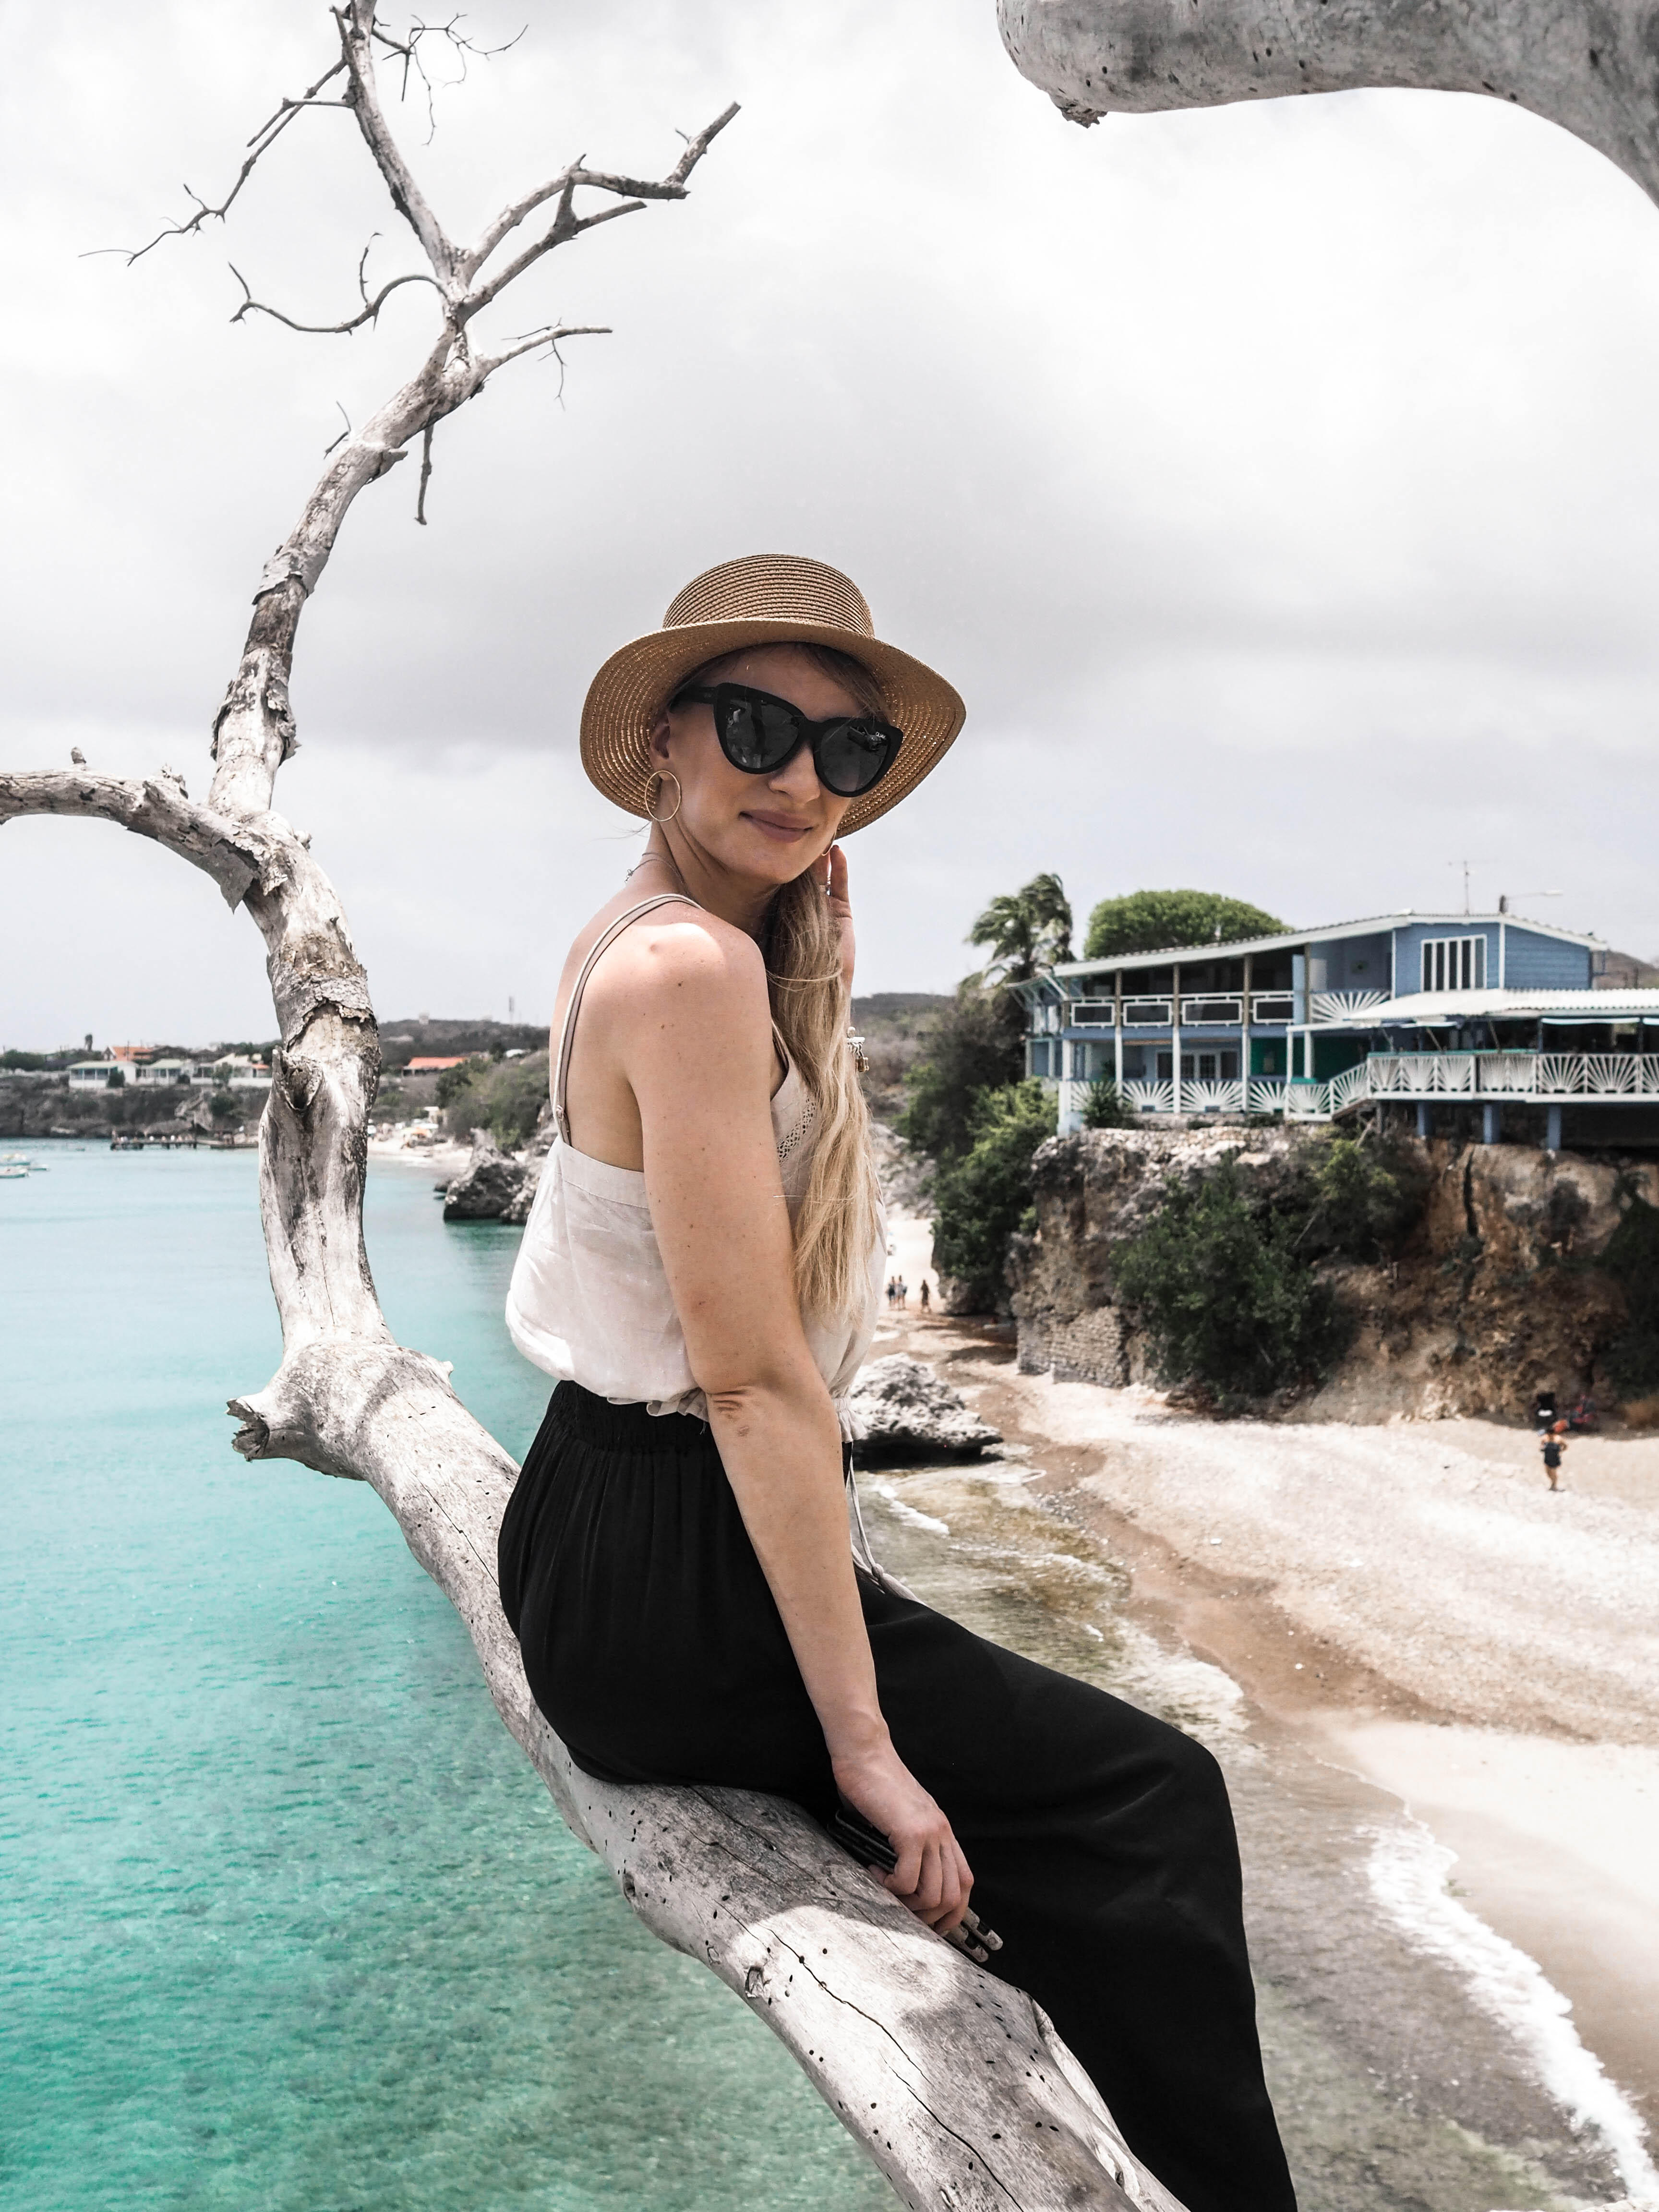 MON MODE | Fashion Blogger | Fashion Blog | Toronto Blogger |Curacao Highlights